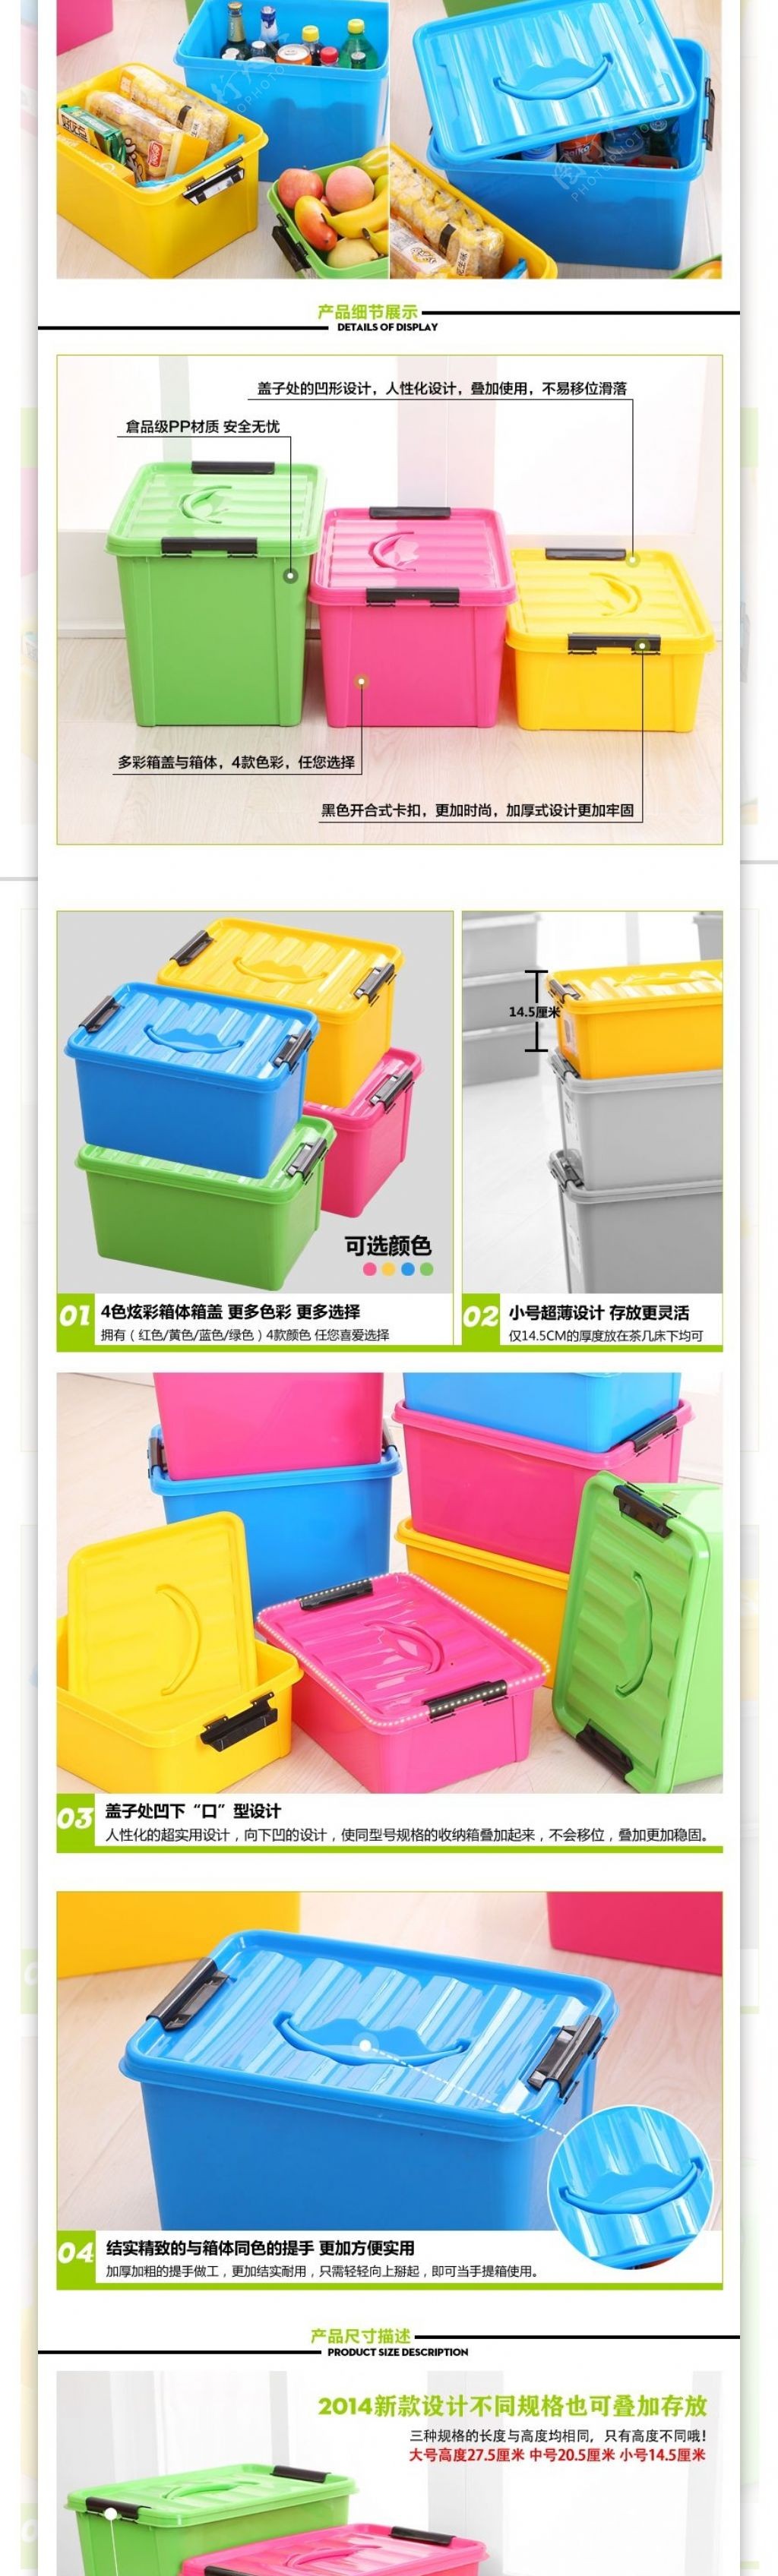 彩色塑料整理箱详情页